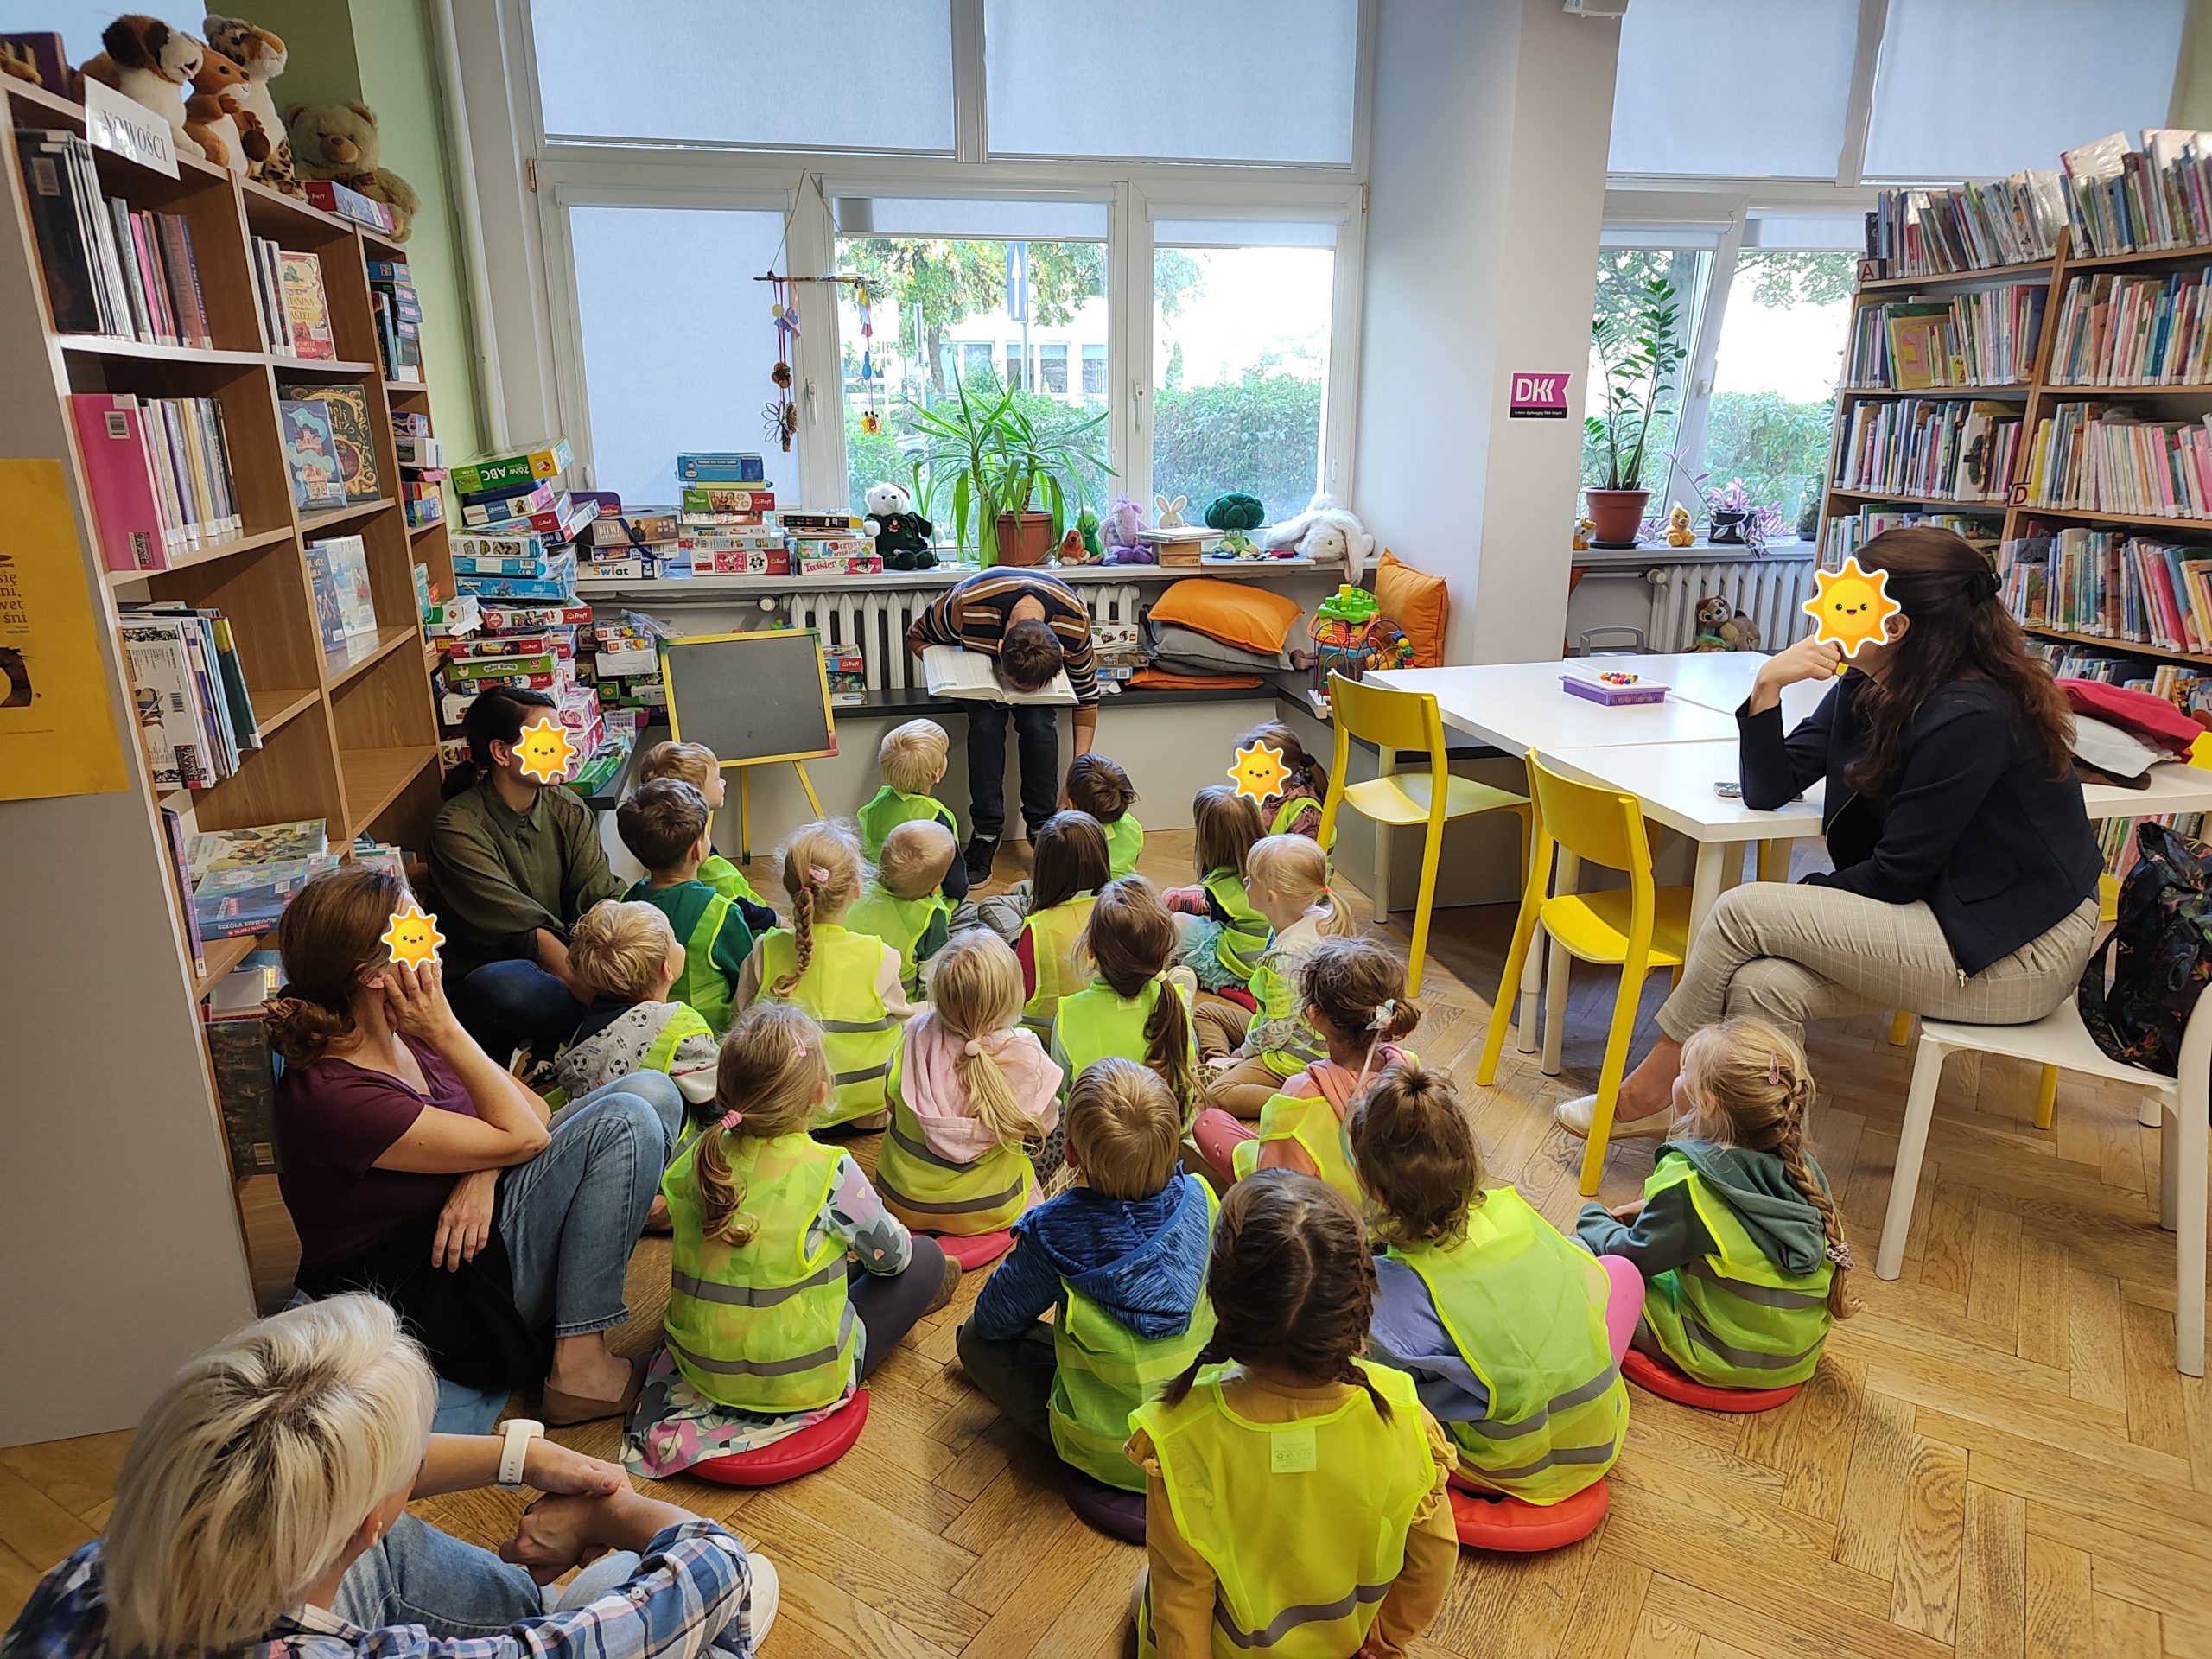 Przedszkolaki wraz z opiekunkami podczas jednego ze spotkań w bibliotece. Bibliotekarz wprowadził humorystyczny element czytania encyklopedii.